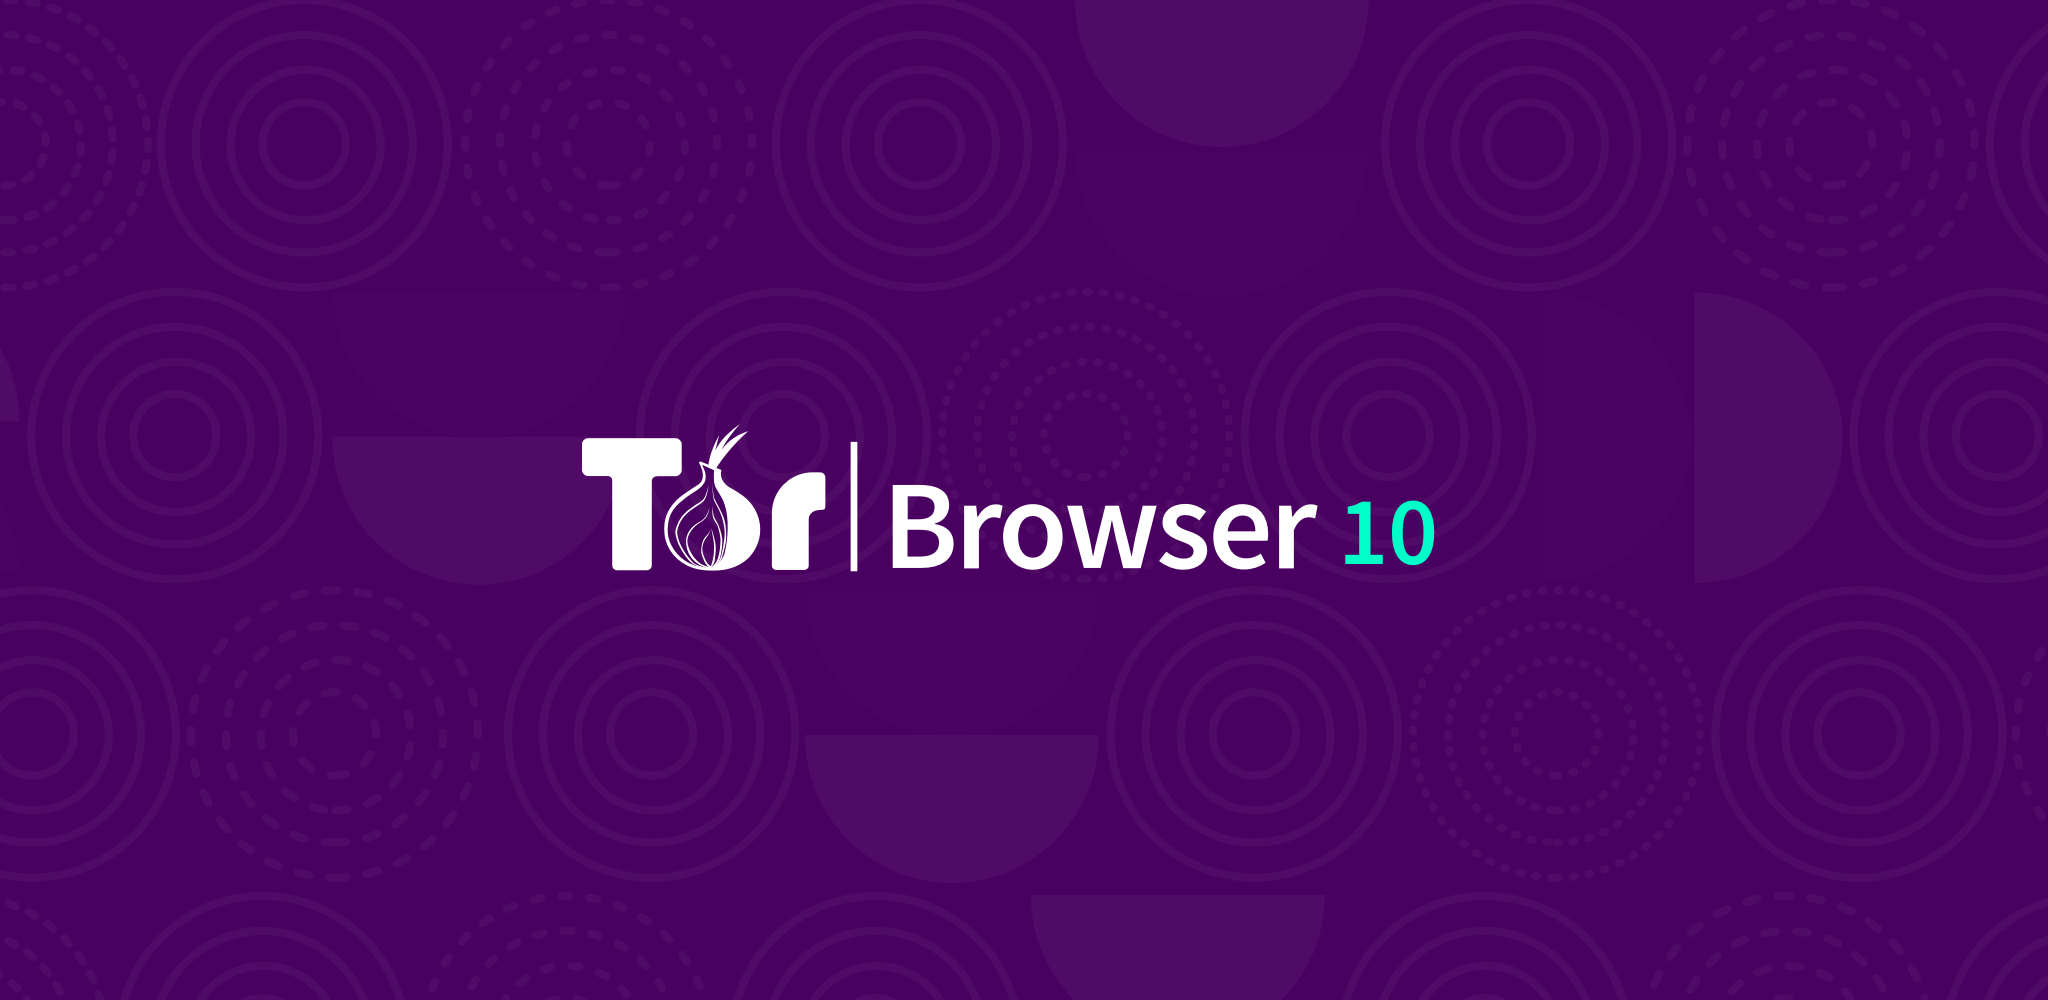 Internet browser tor mac mega2web браузер тор для андроид скачать на русском с официального сайта бесплатно mega